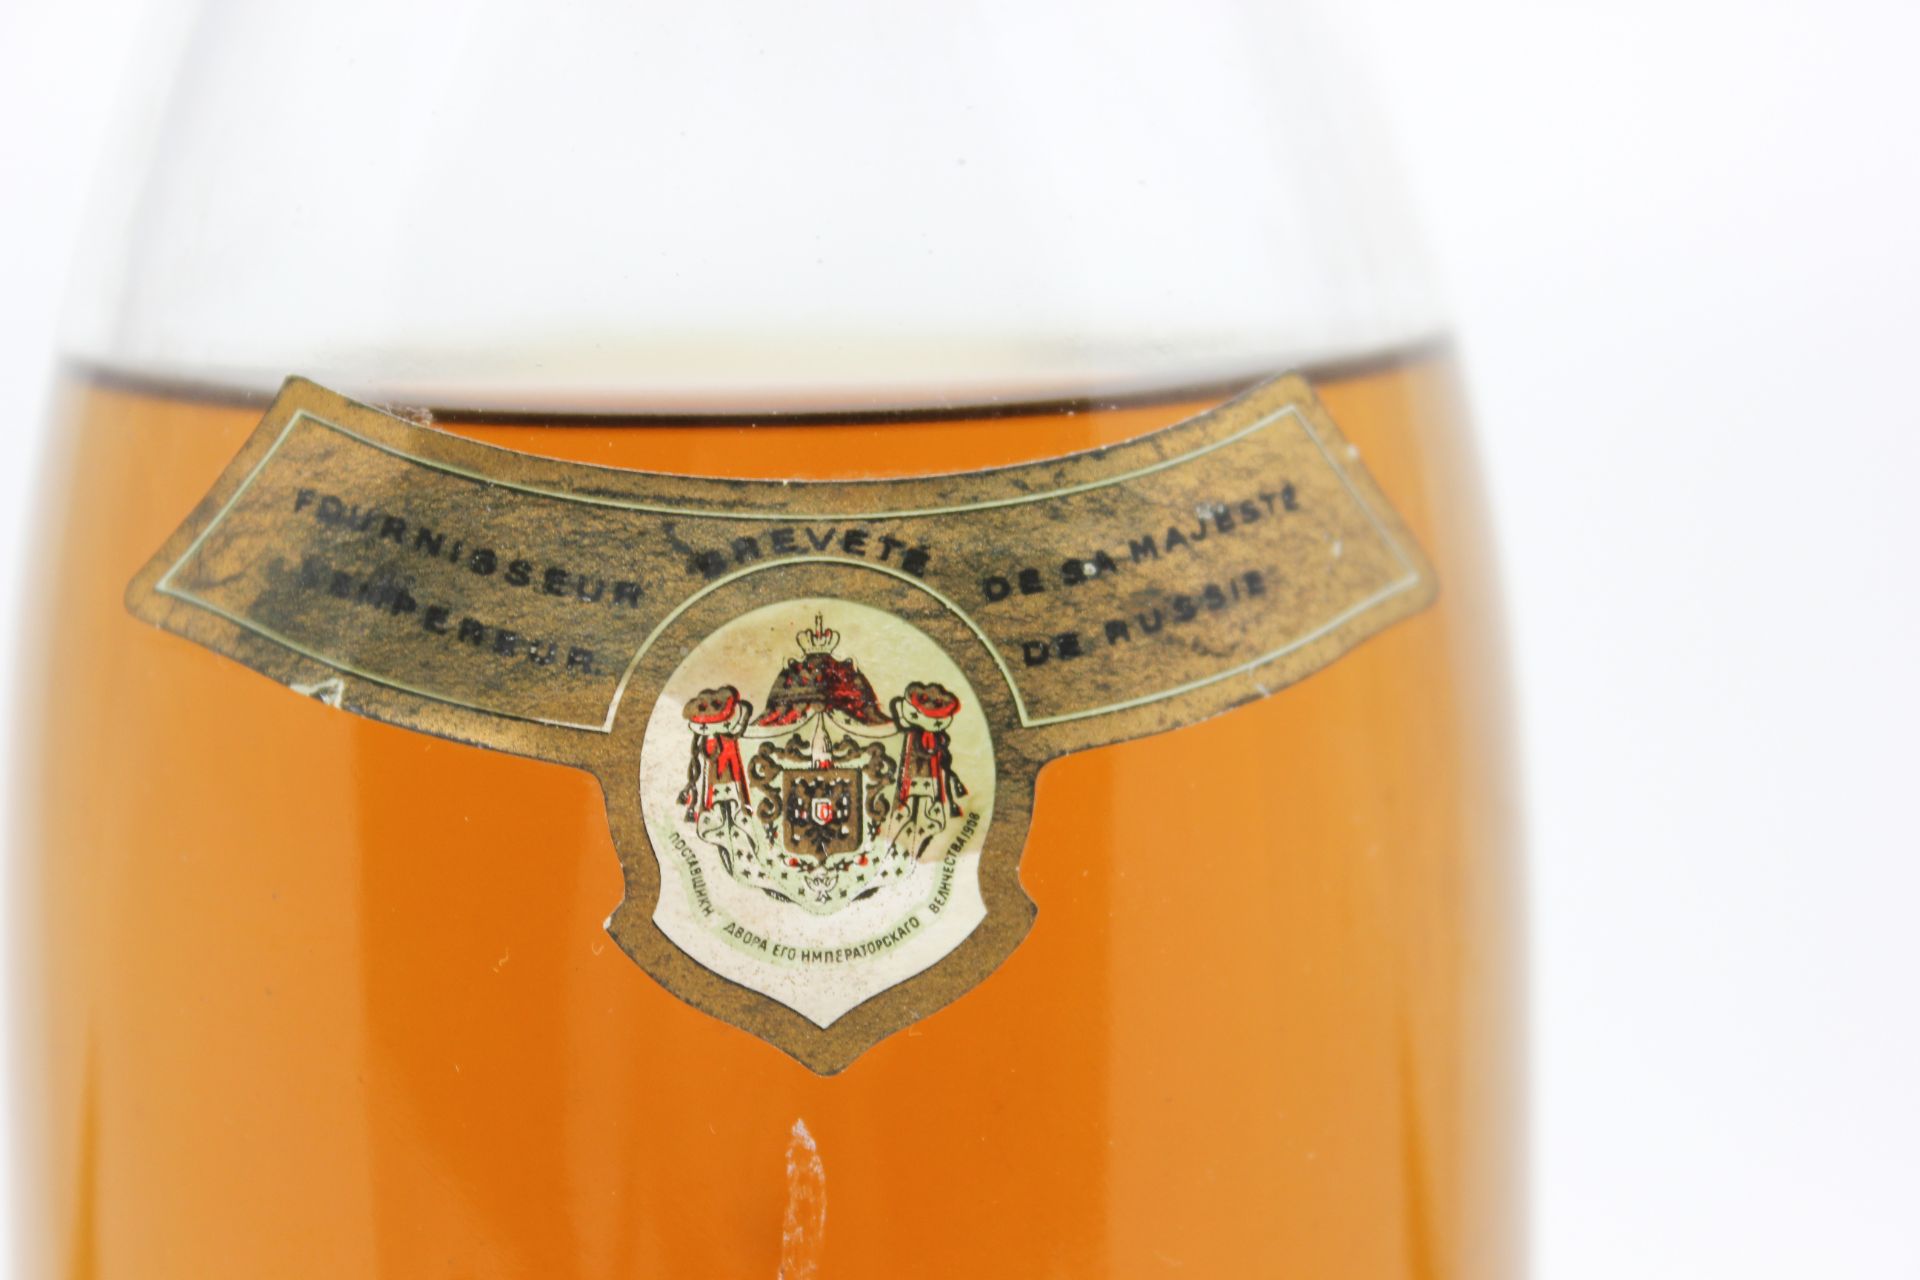 1973 Louis Roederer Cristal Brut Champagne - Image 11 of 14